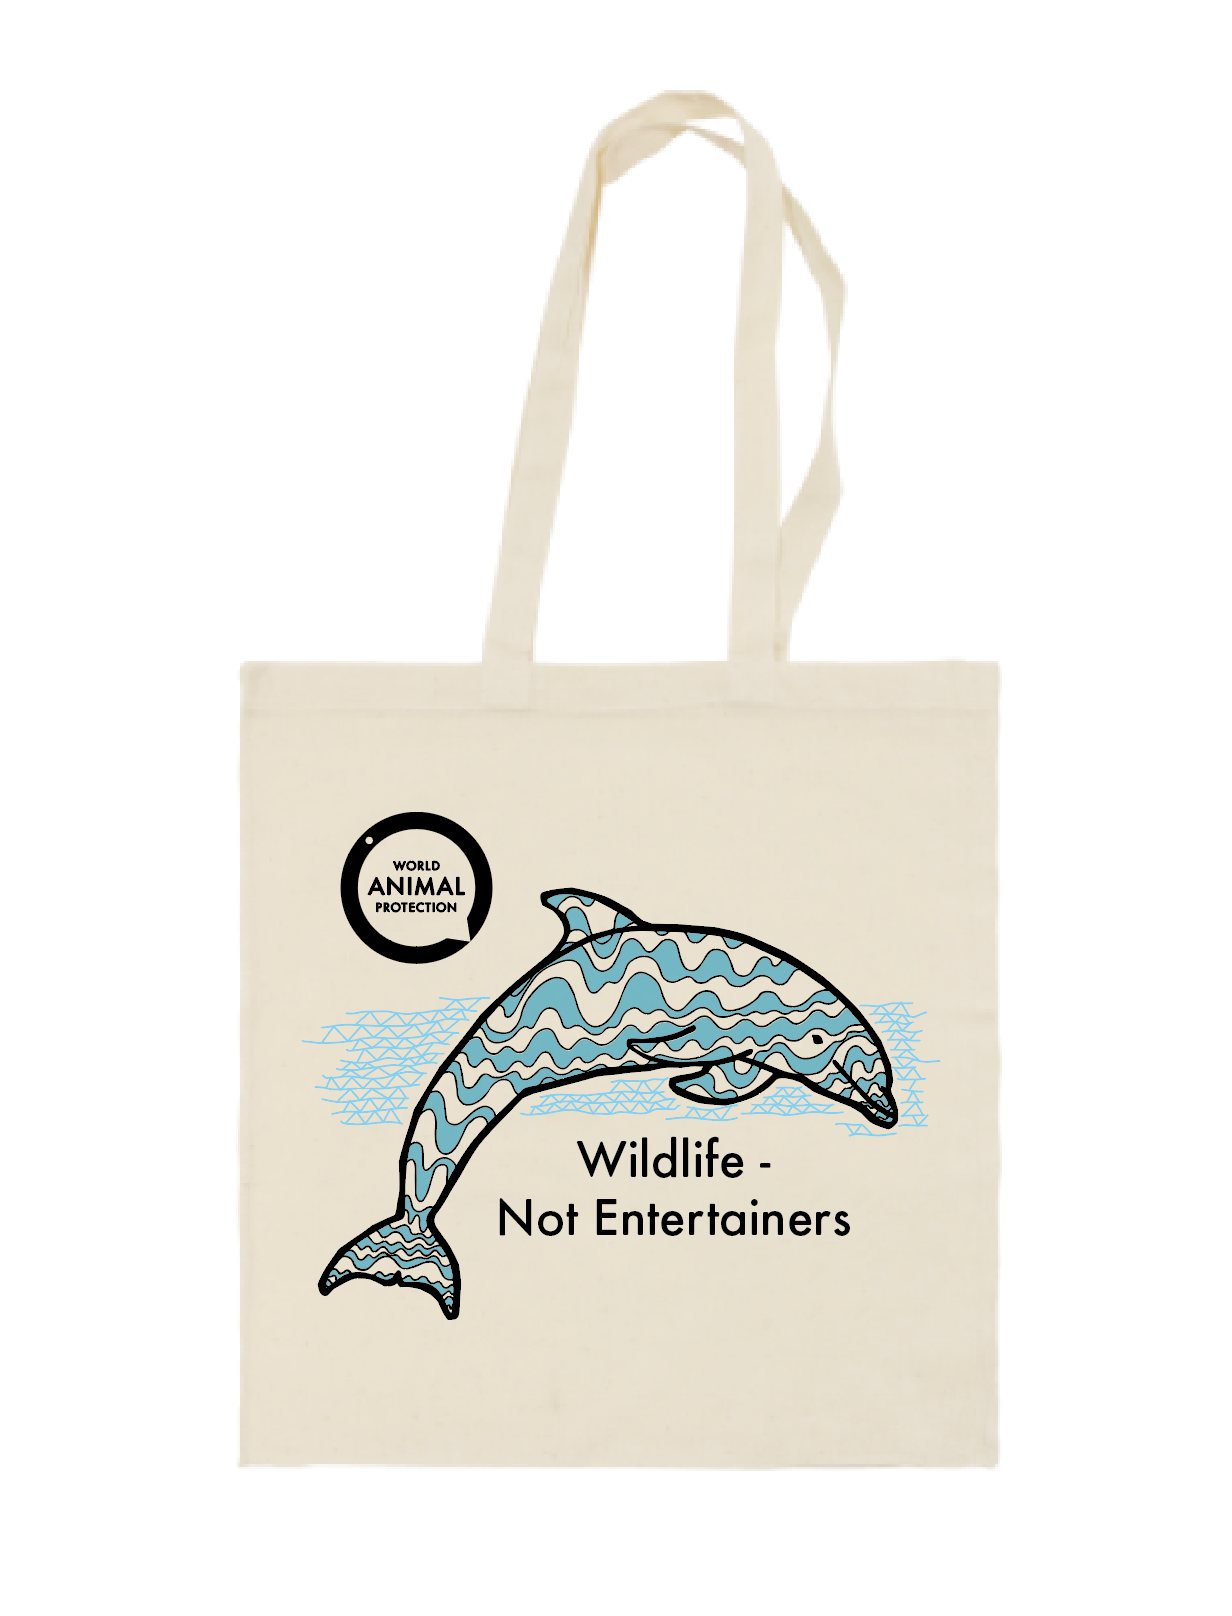 Dolfijnentas met illustratie van dolfijnen